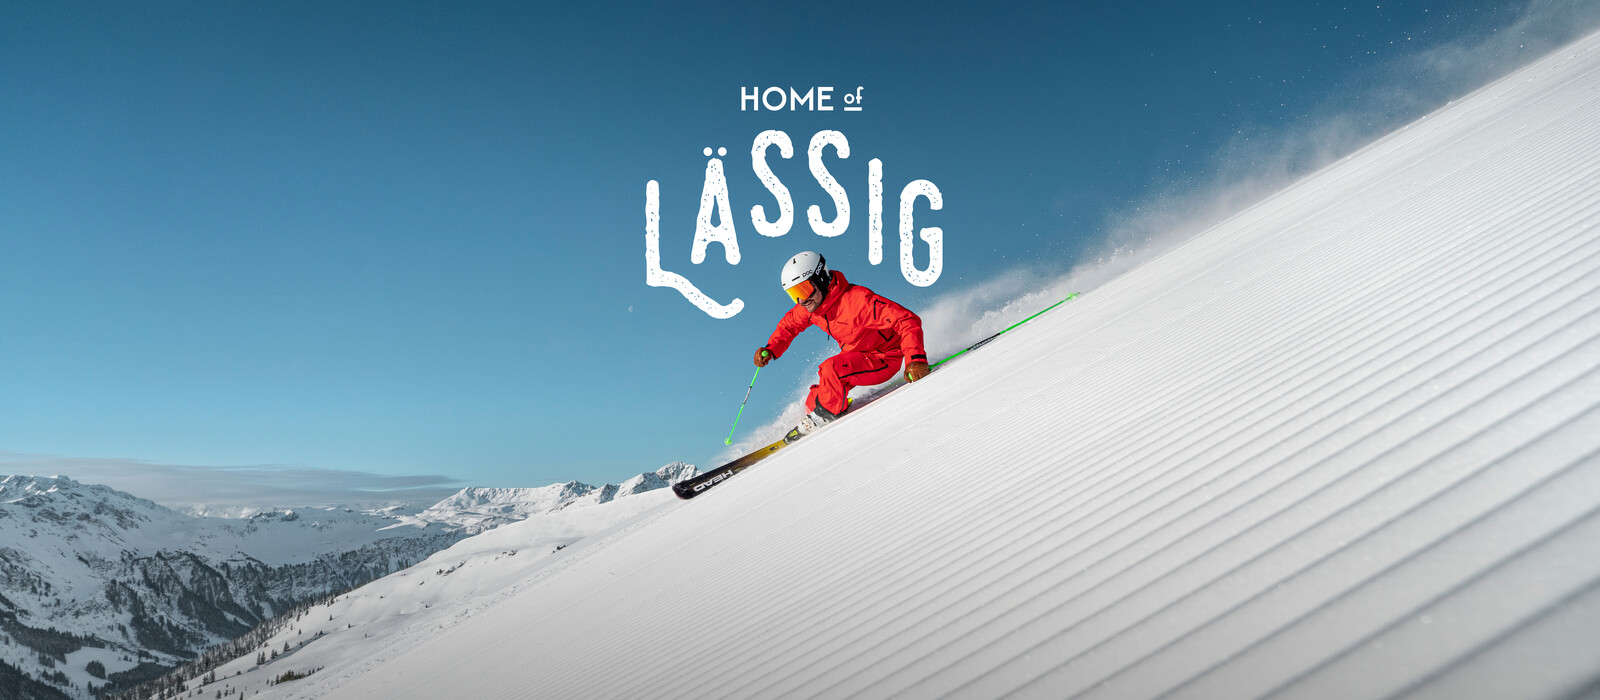 Skifahrer im Home of Lässig | © Christoph Johann